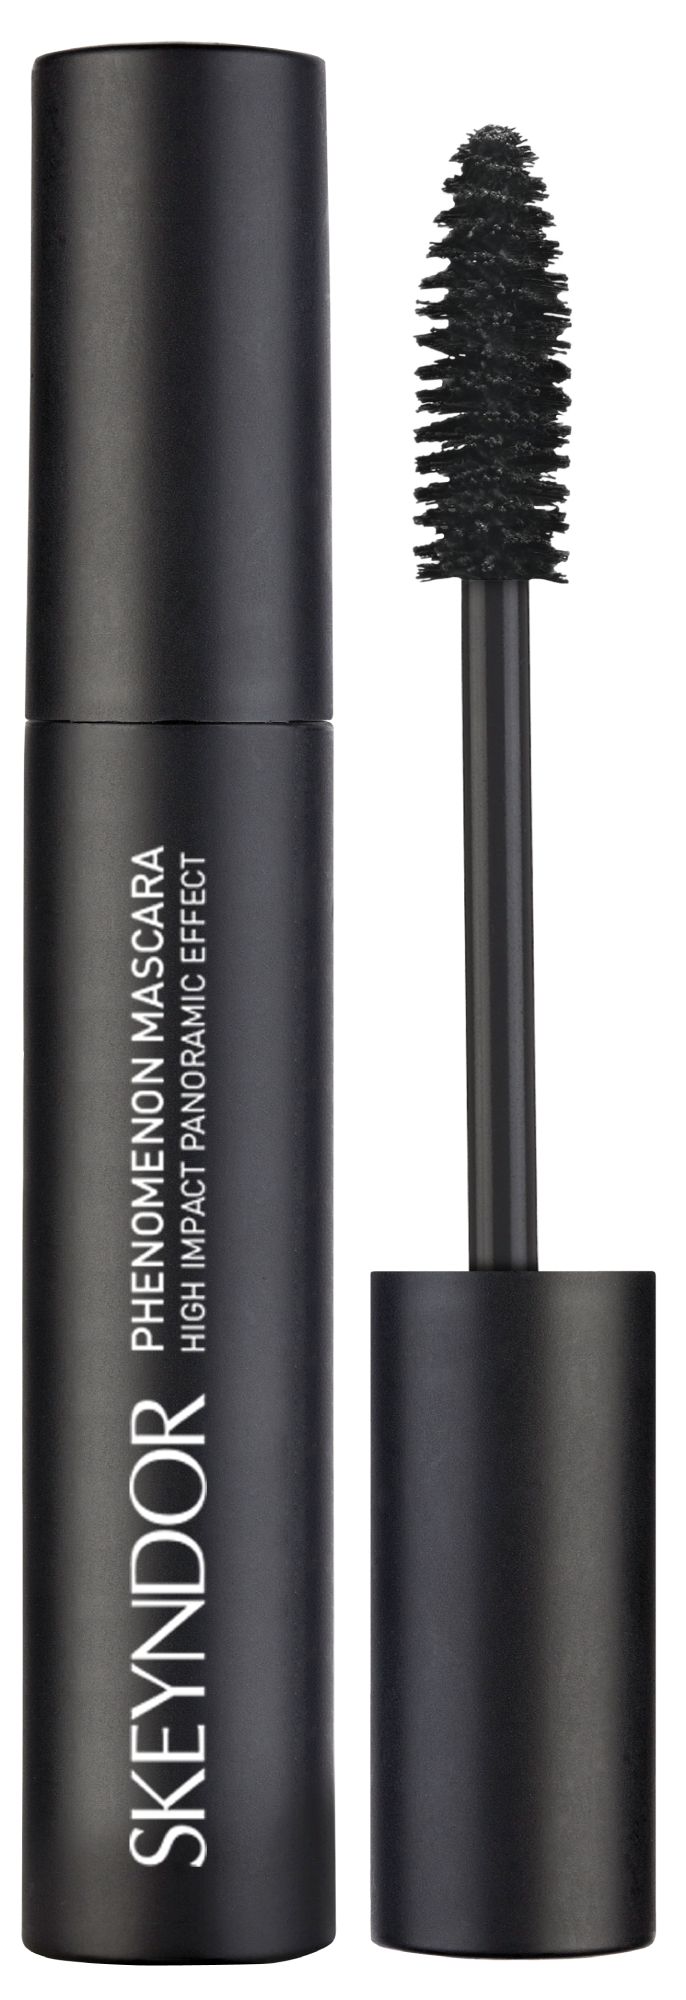 Skeyndor Skincare Makeup Phenomenon – černá řasenka pro efekt umělých řas 14 ml